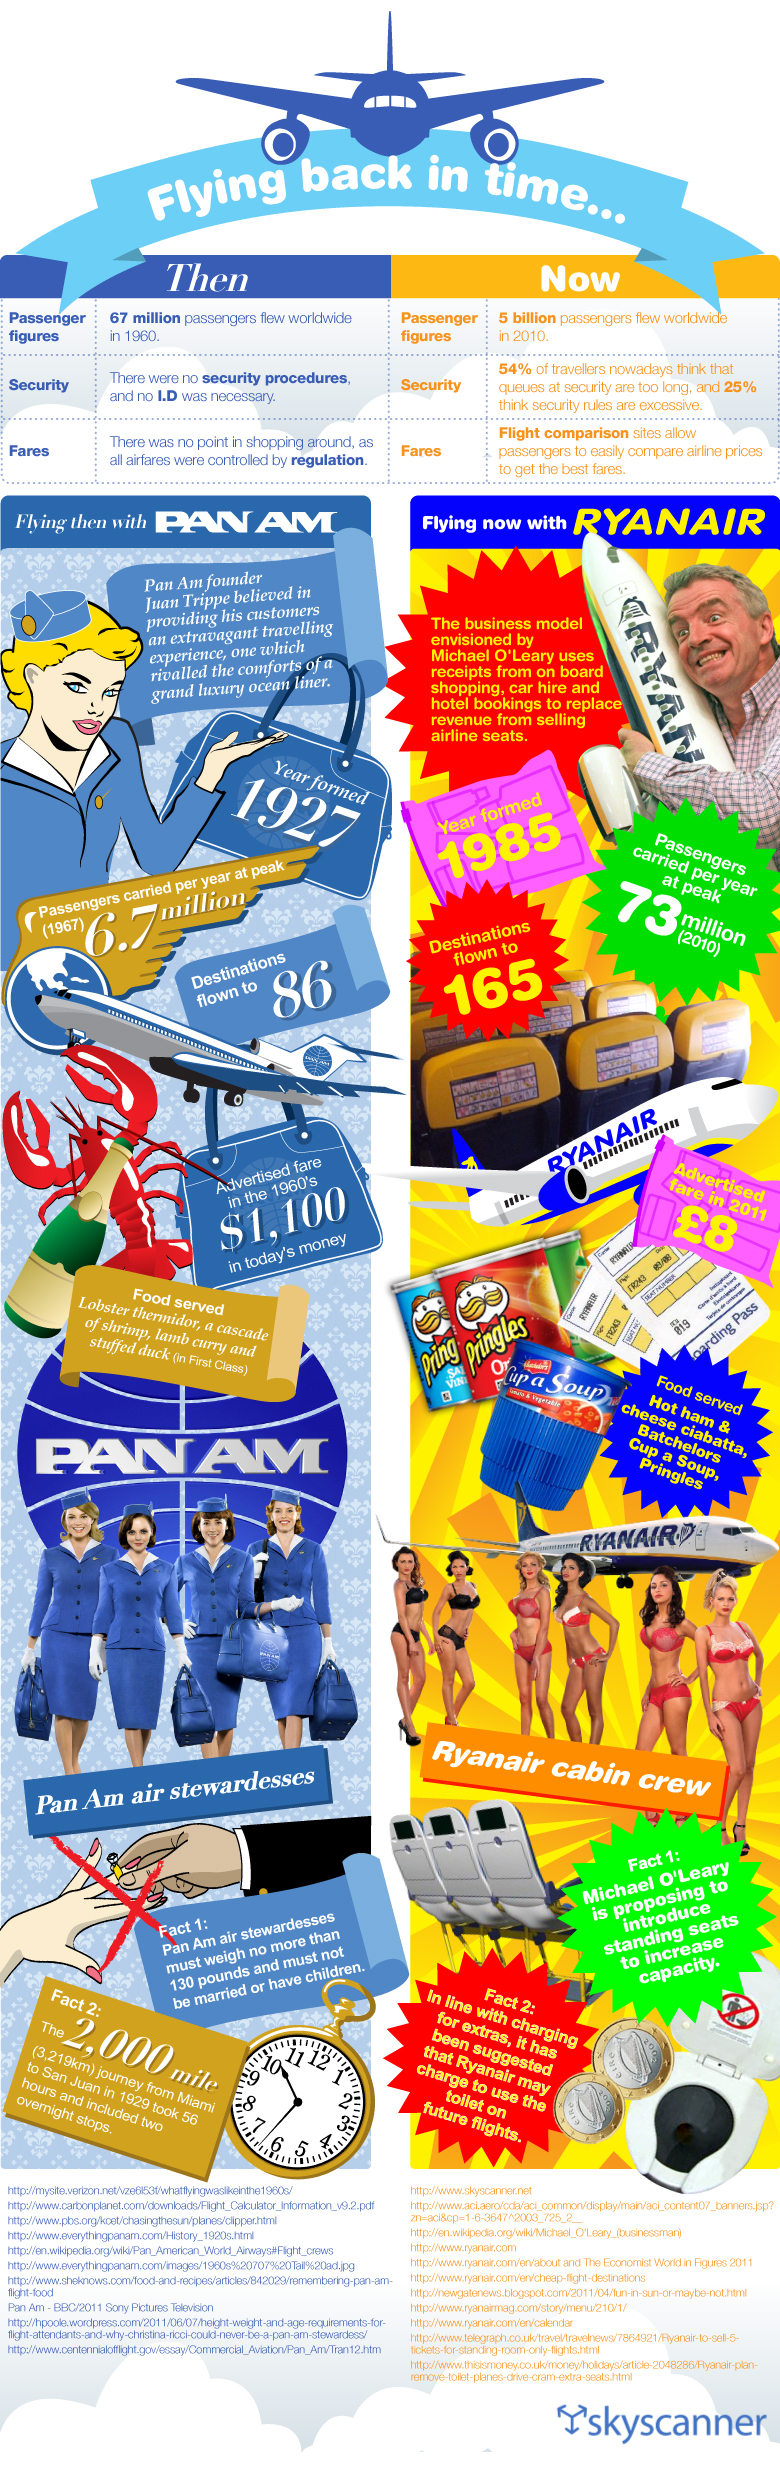 Flying Back in Time - Ryanair VS Pan AM 2